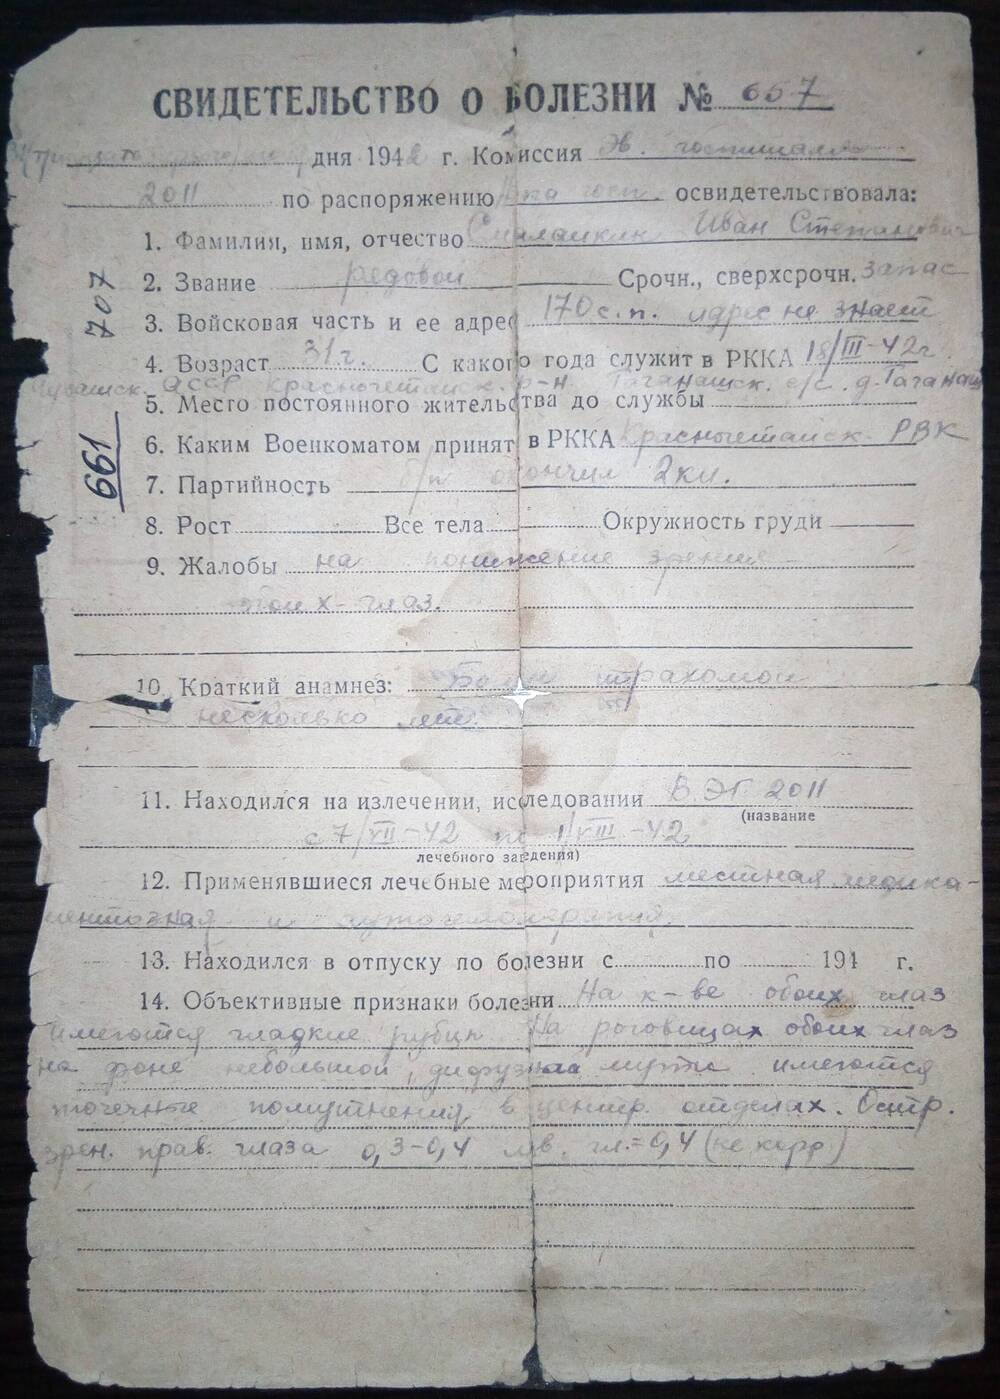 Свидетельство о болезни №657 Смалайкина Ивана Степановича, комиссия эвакогоспиталя